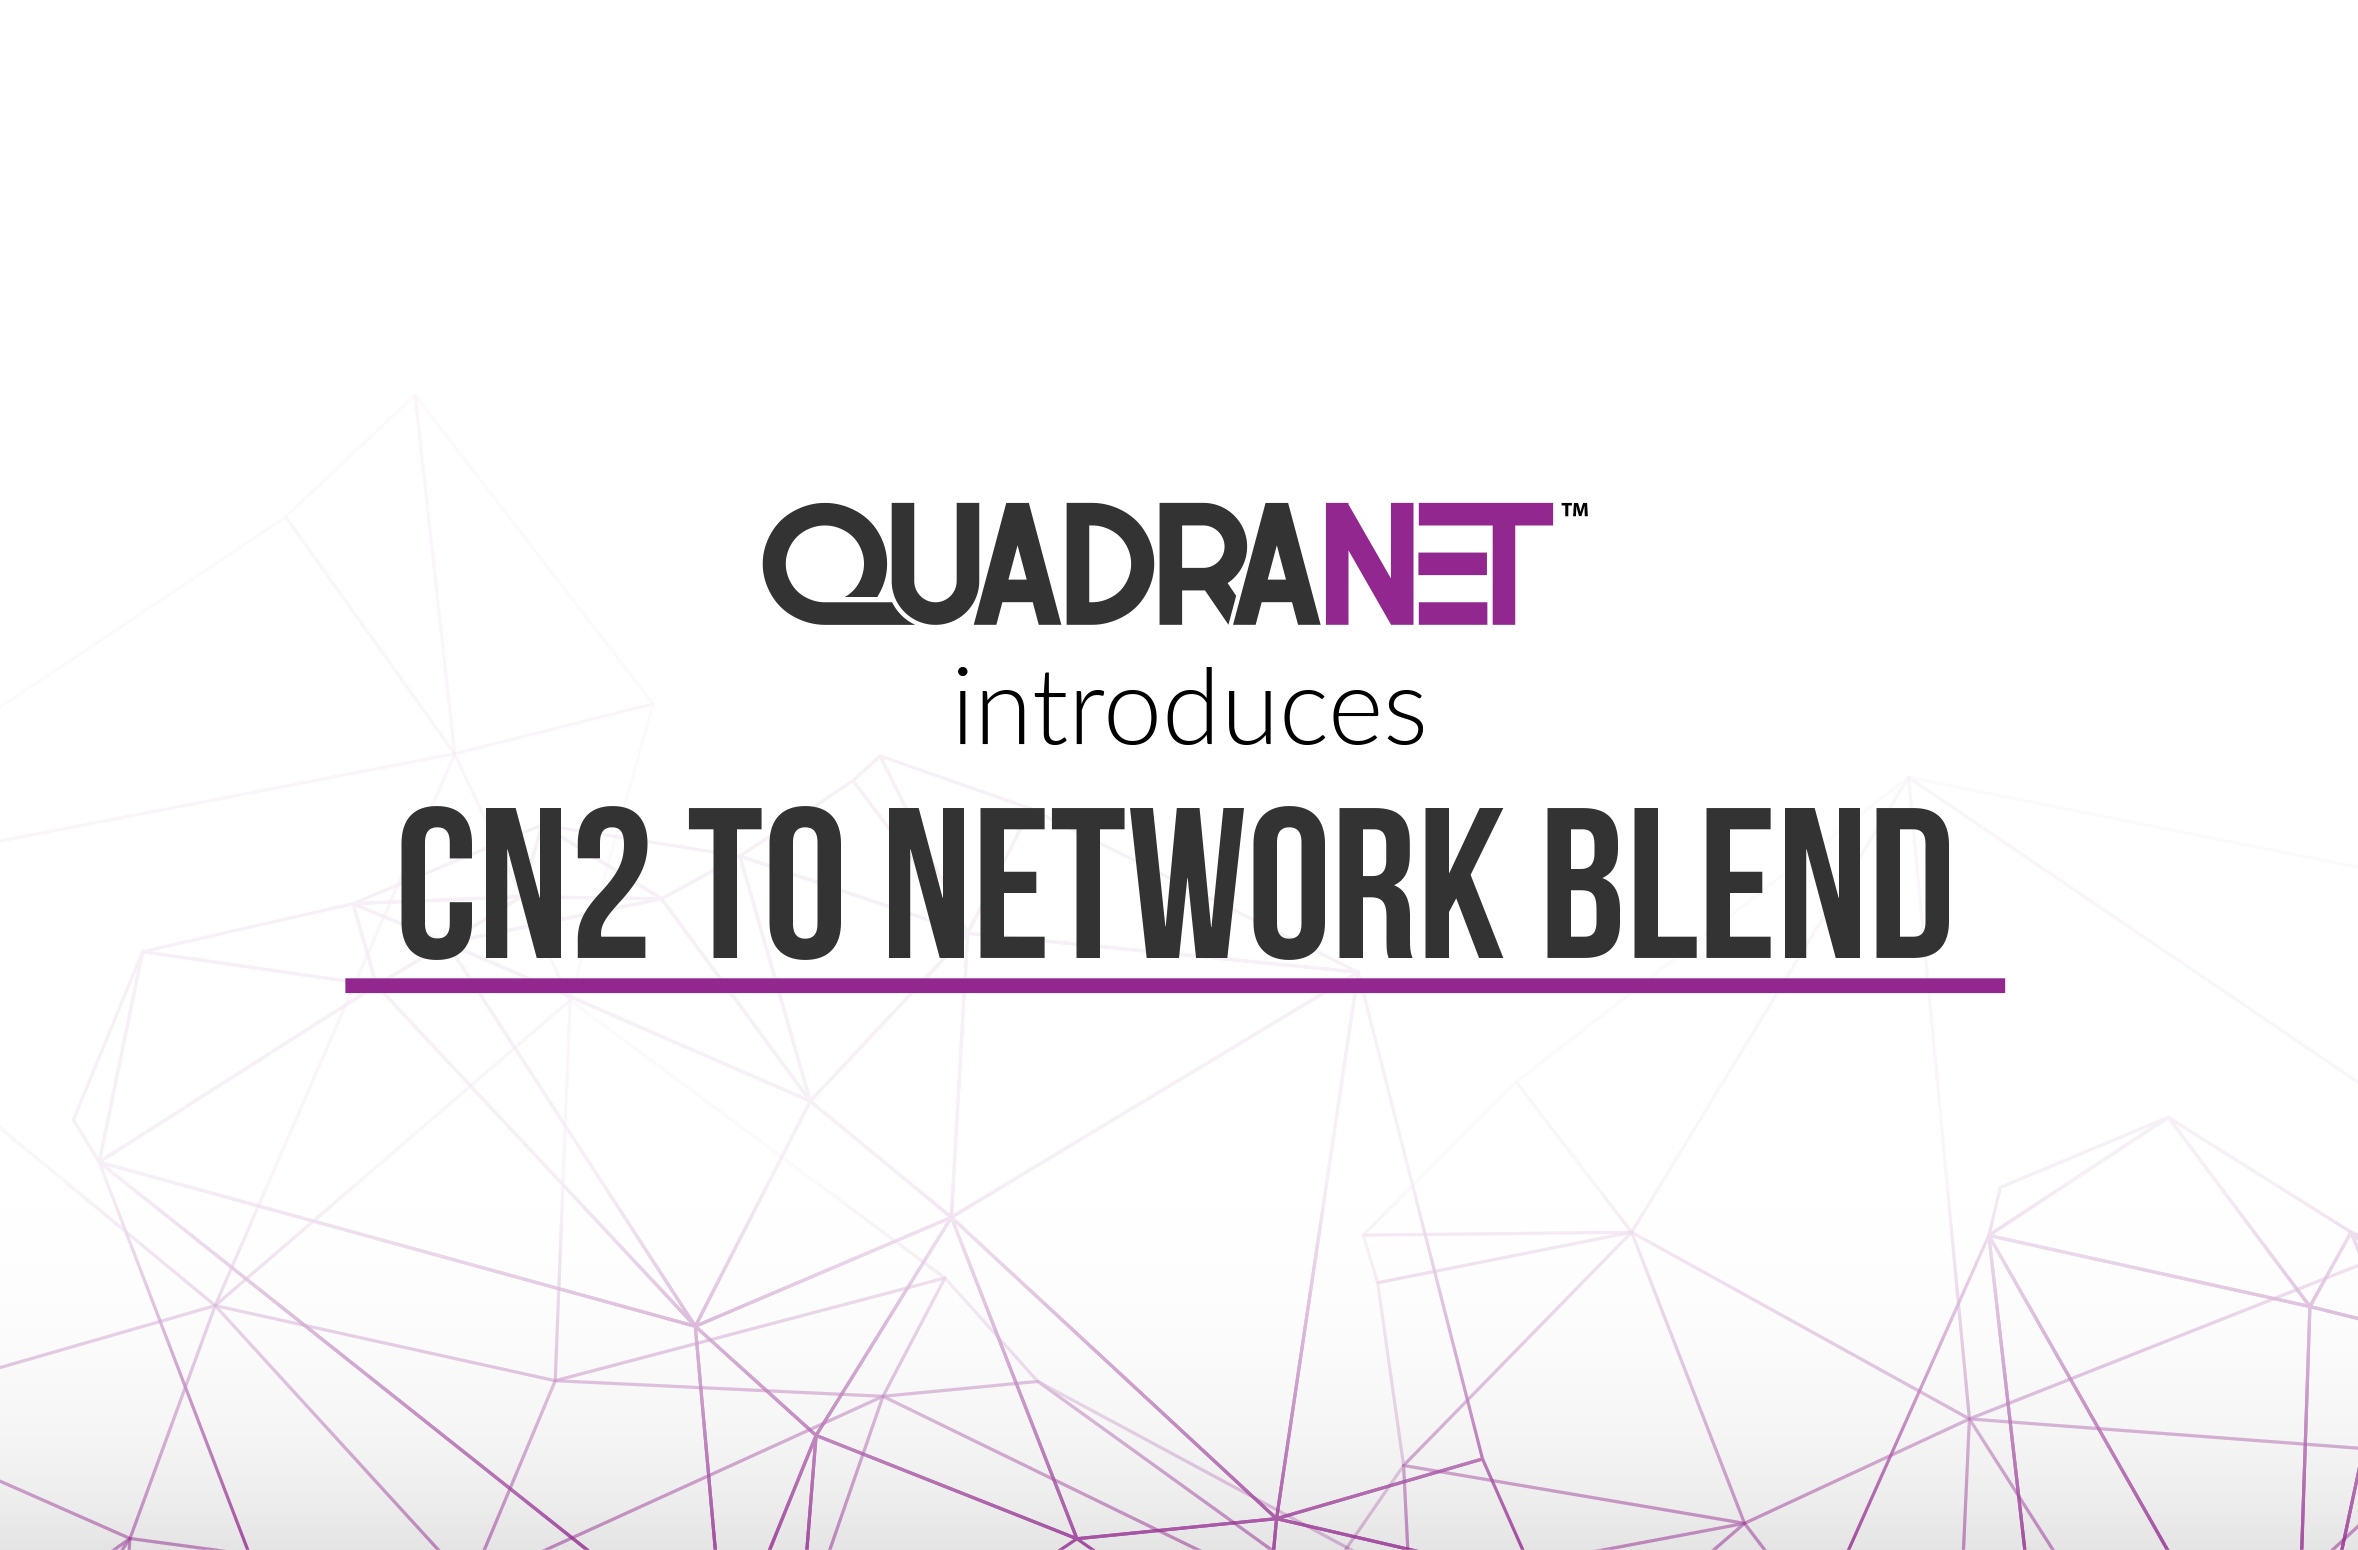 QuadraNet Introduces China Telecom CN2 into Network Blend